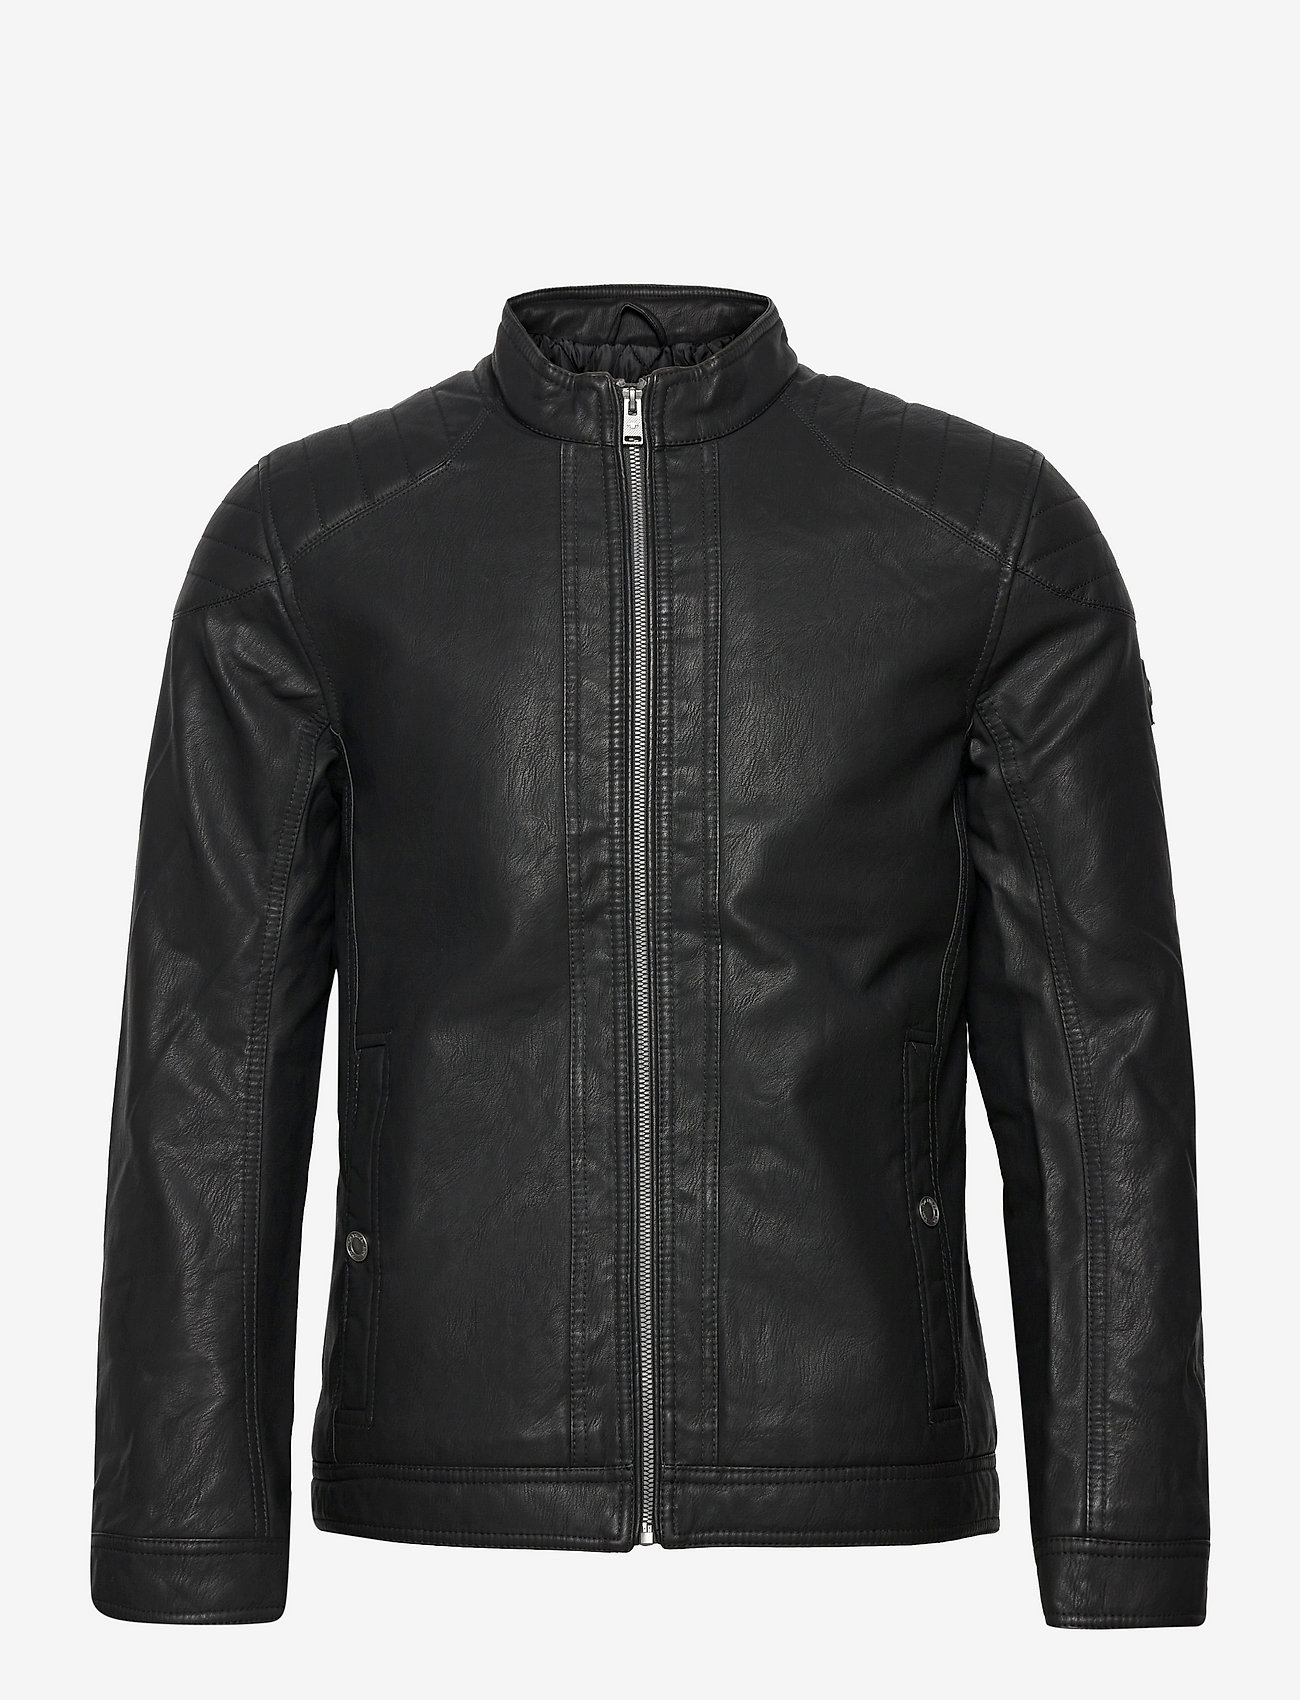 Tom Tailor - fake leather jacket - spring jackets - black - 0